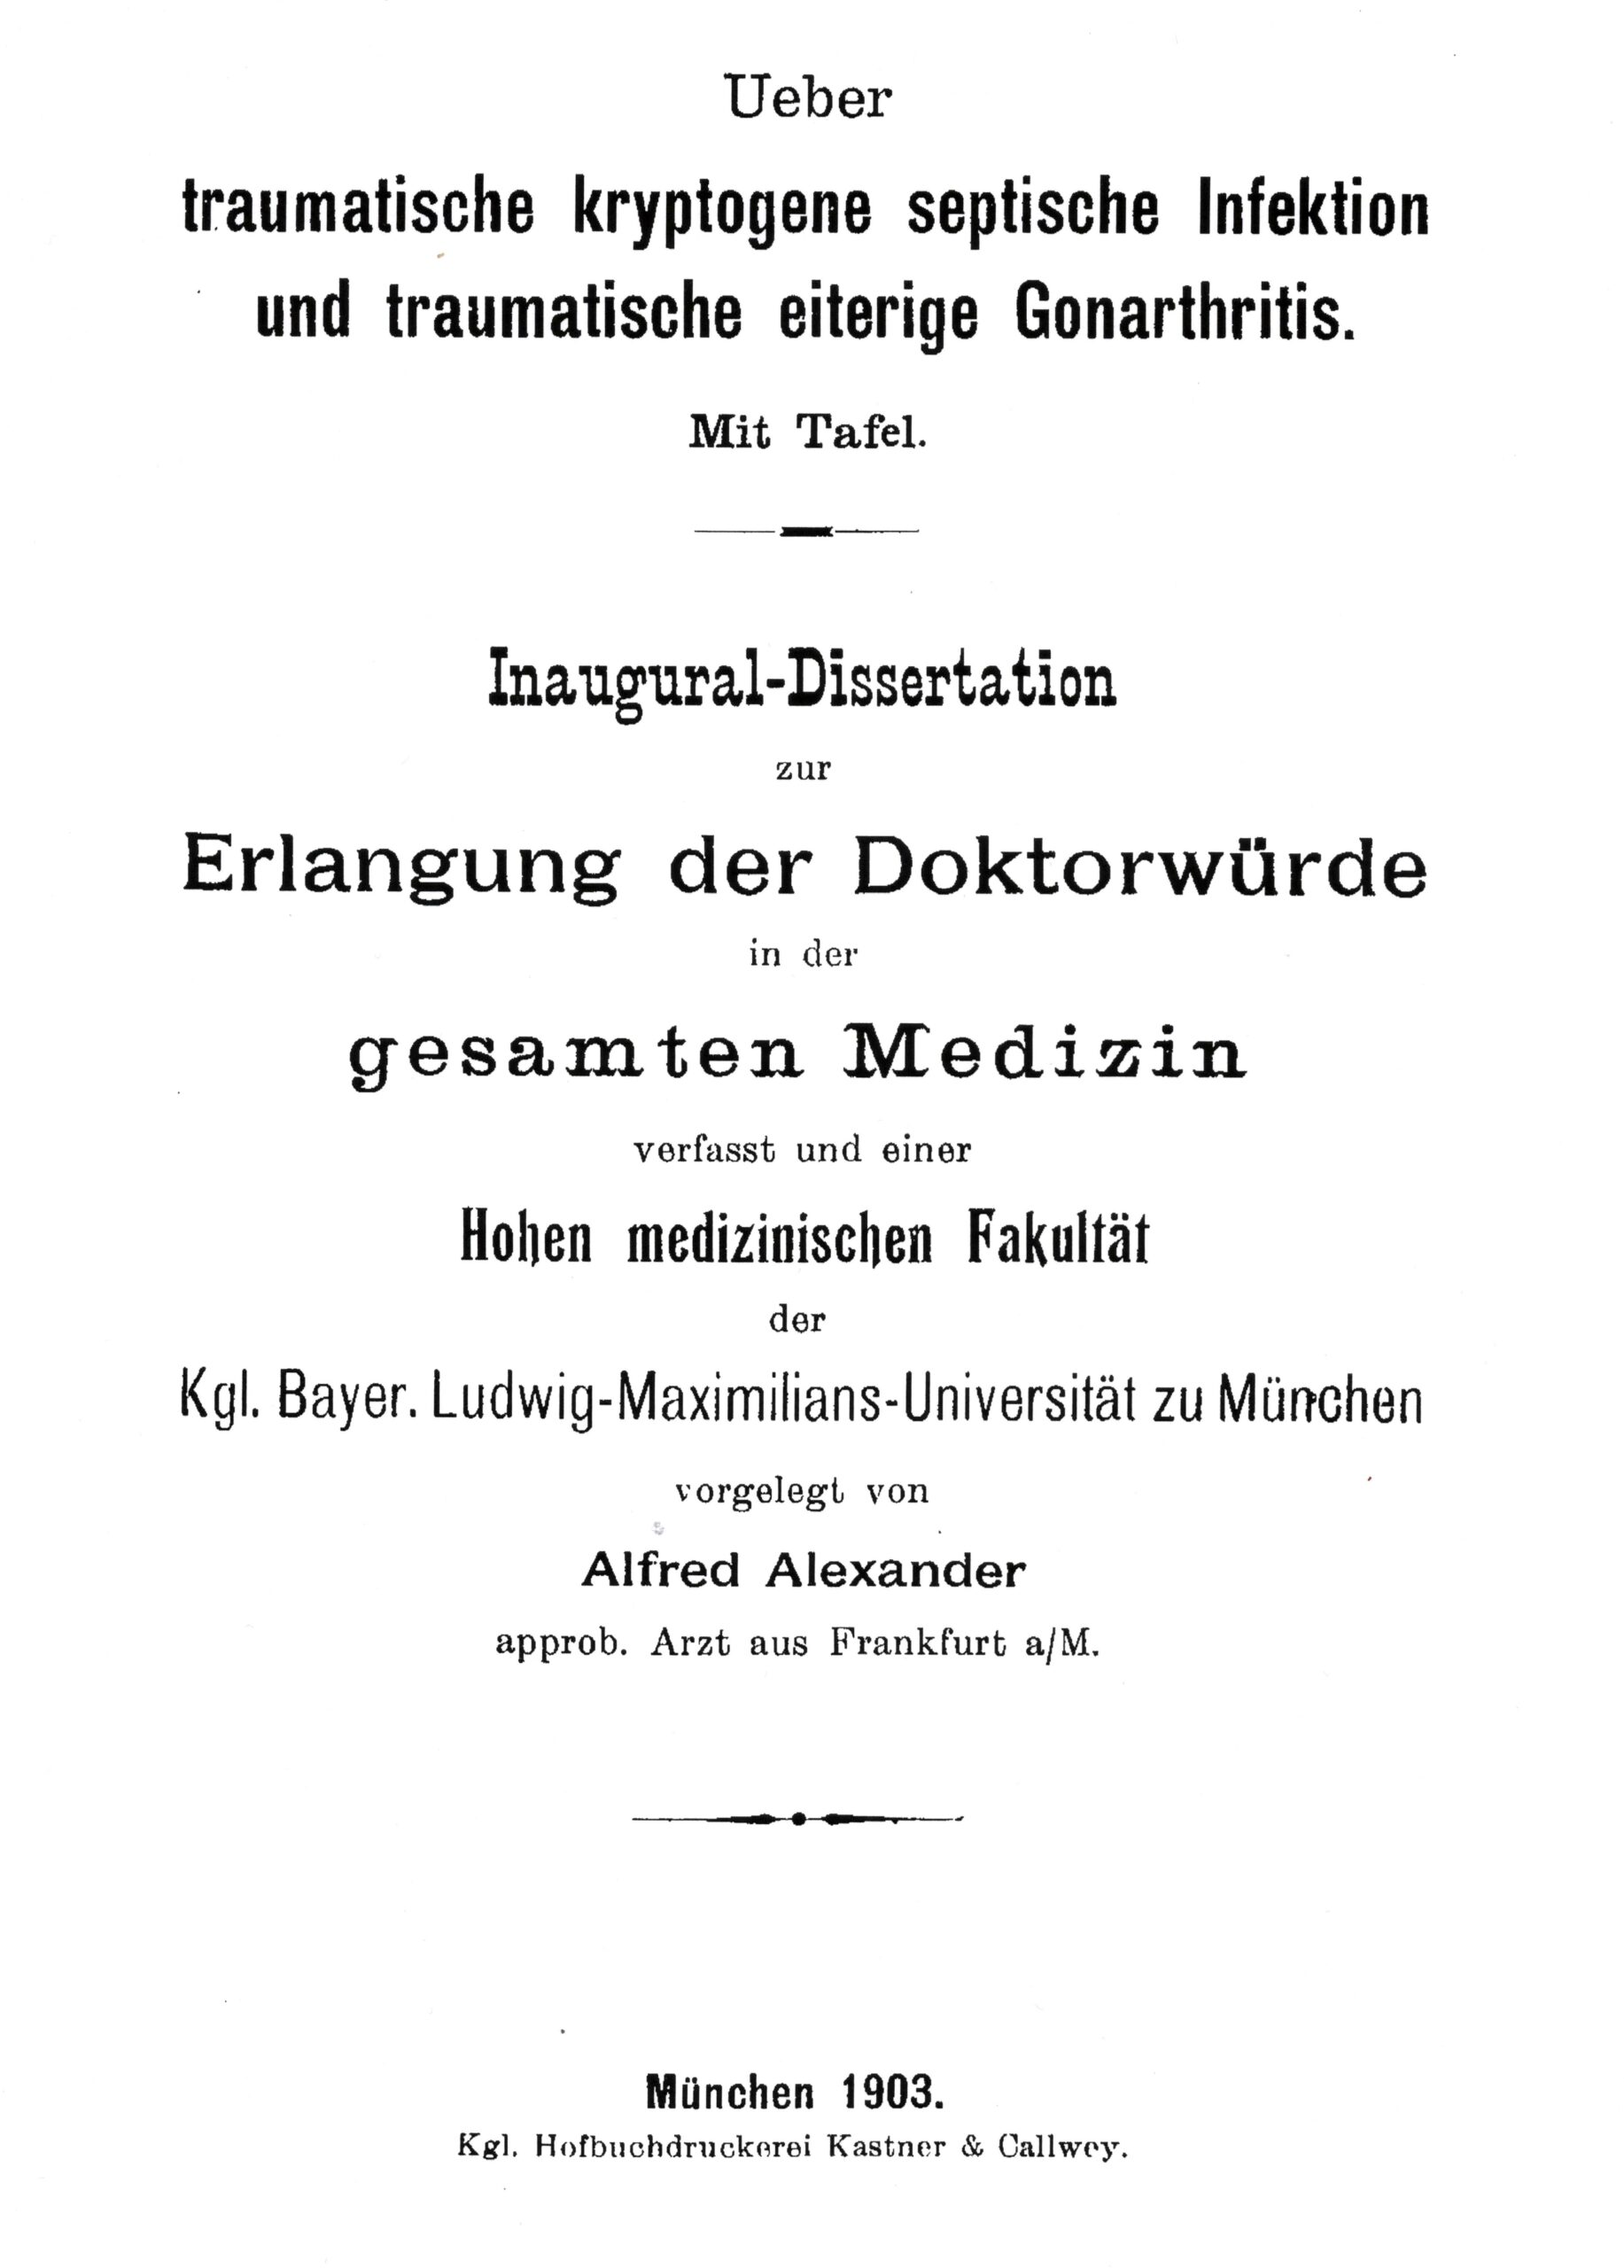 Dissertation, München 1903